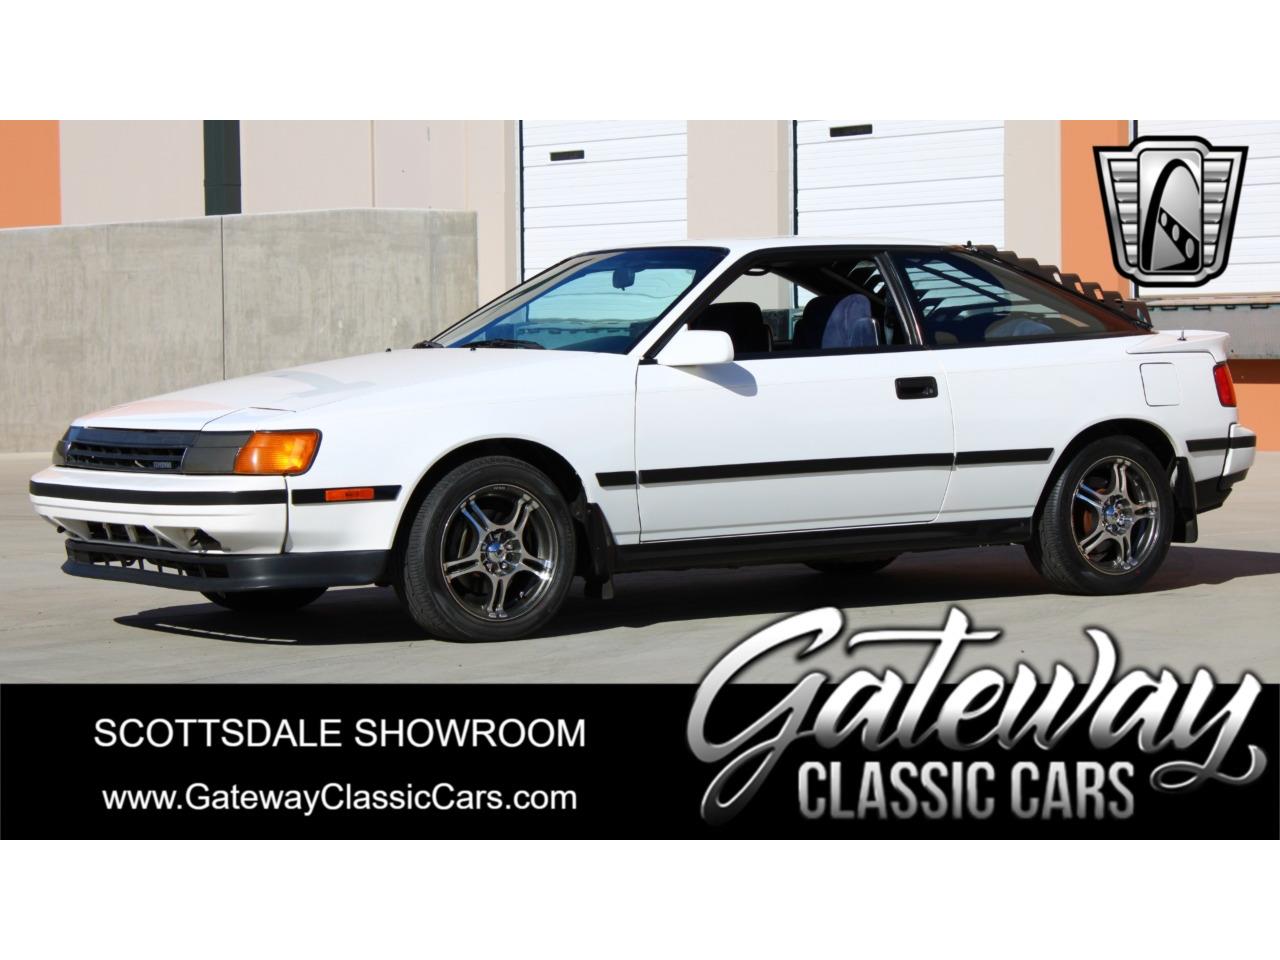 For Sale: 1987 Toyota Celica in O'Fallon, Illinois for sale in O Fallon, IL